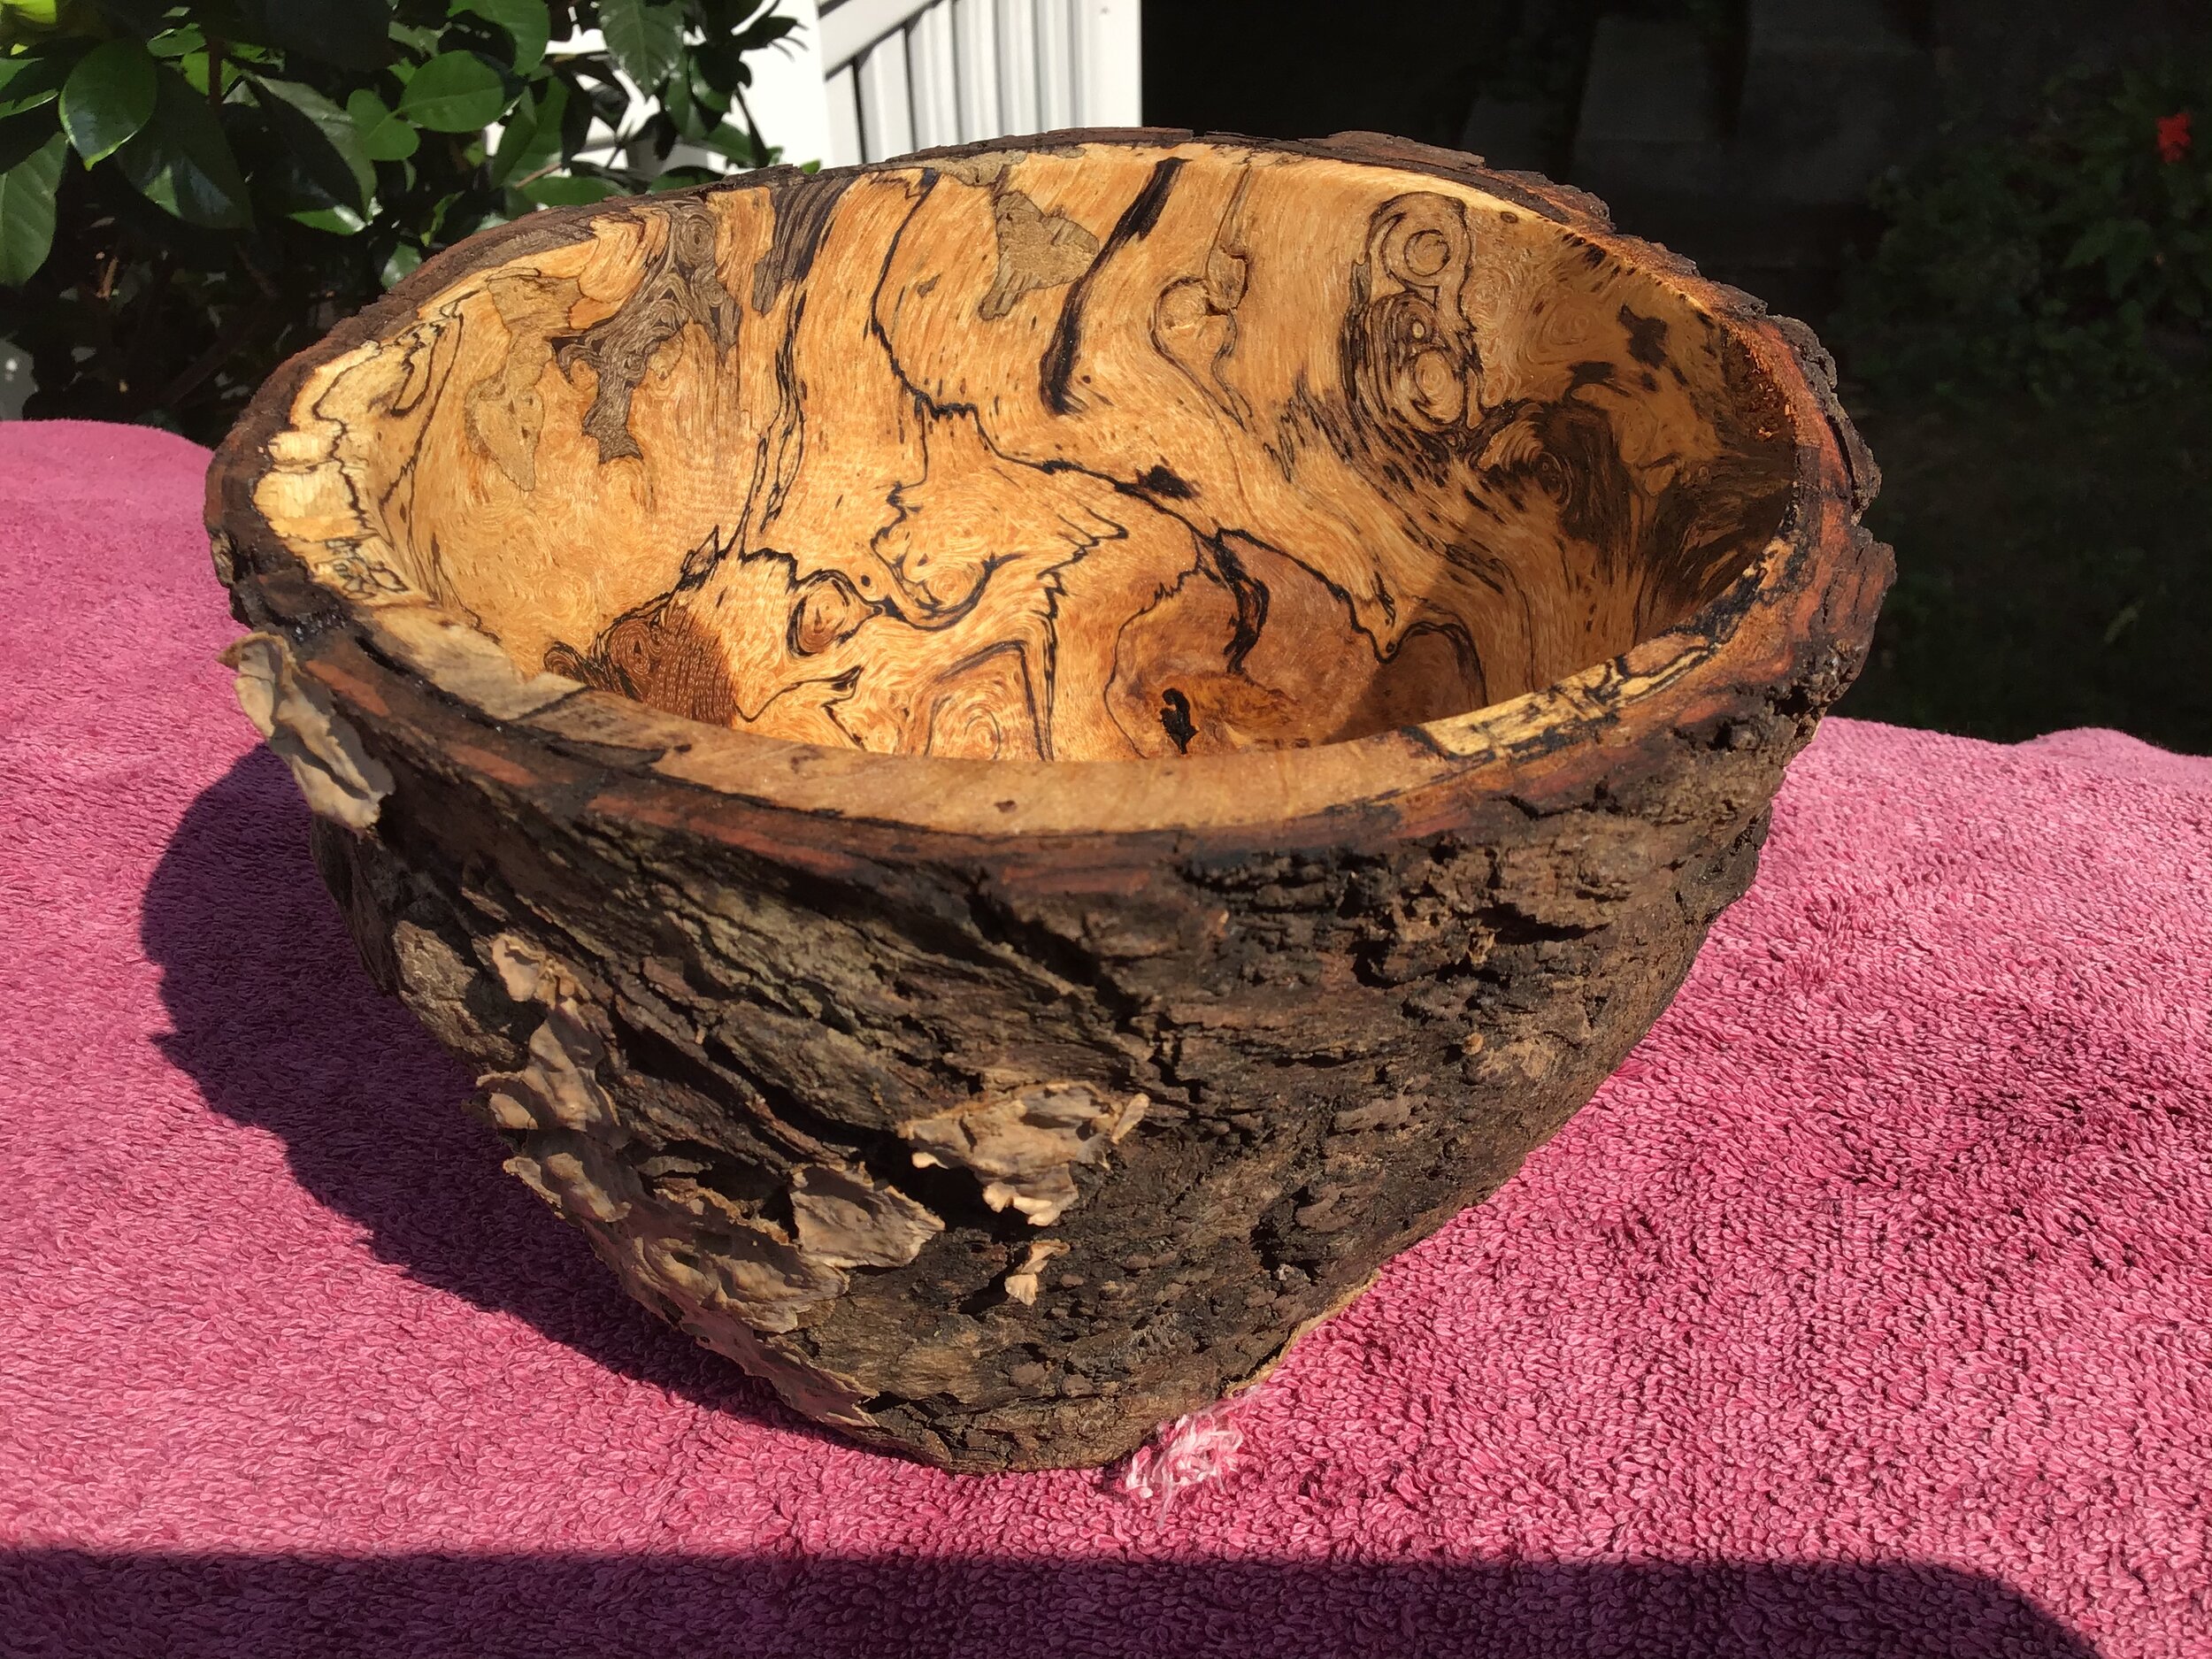  Clinton Scudder White oak burl bowl. 